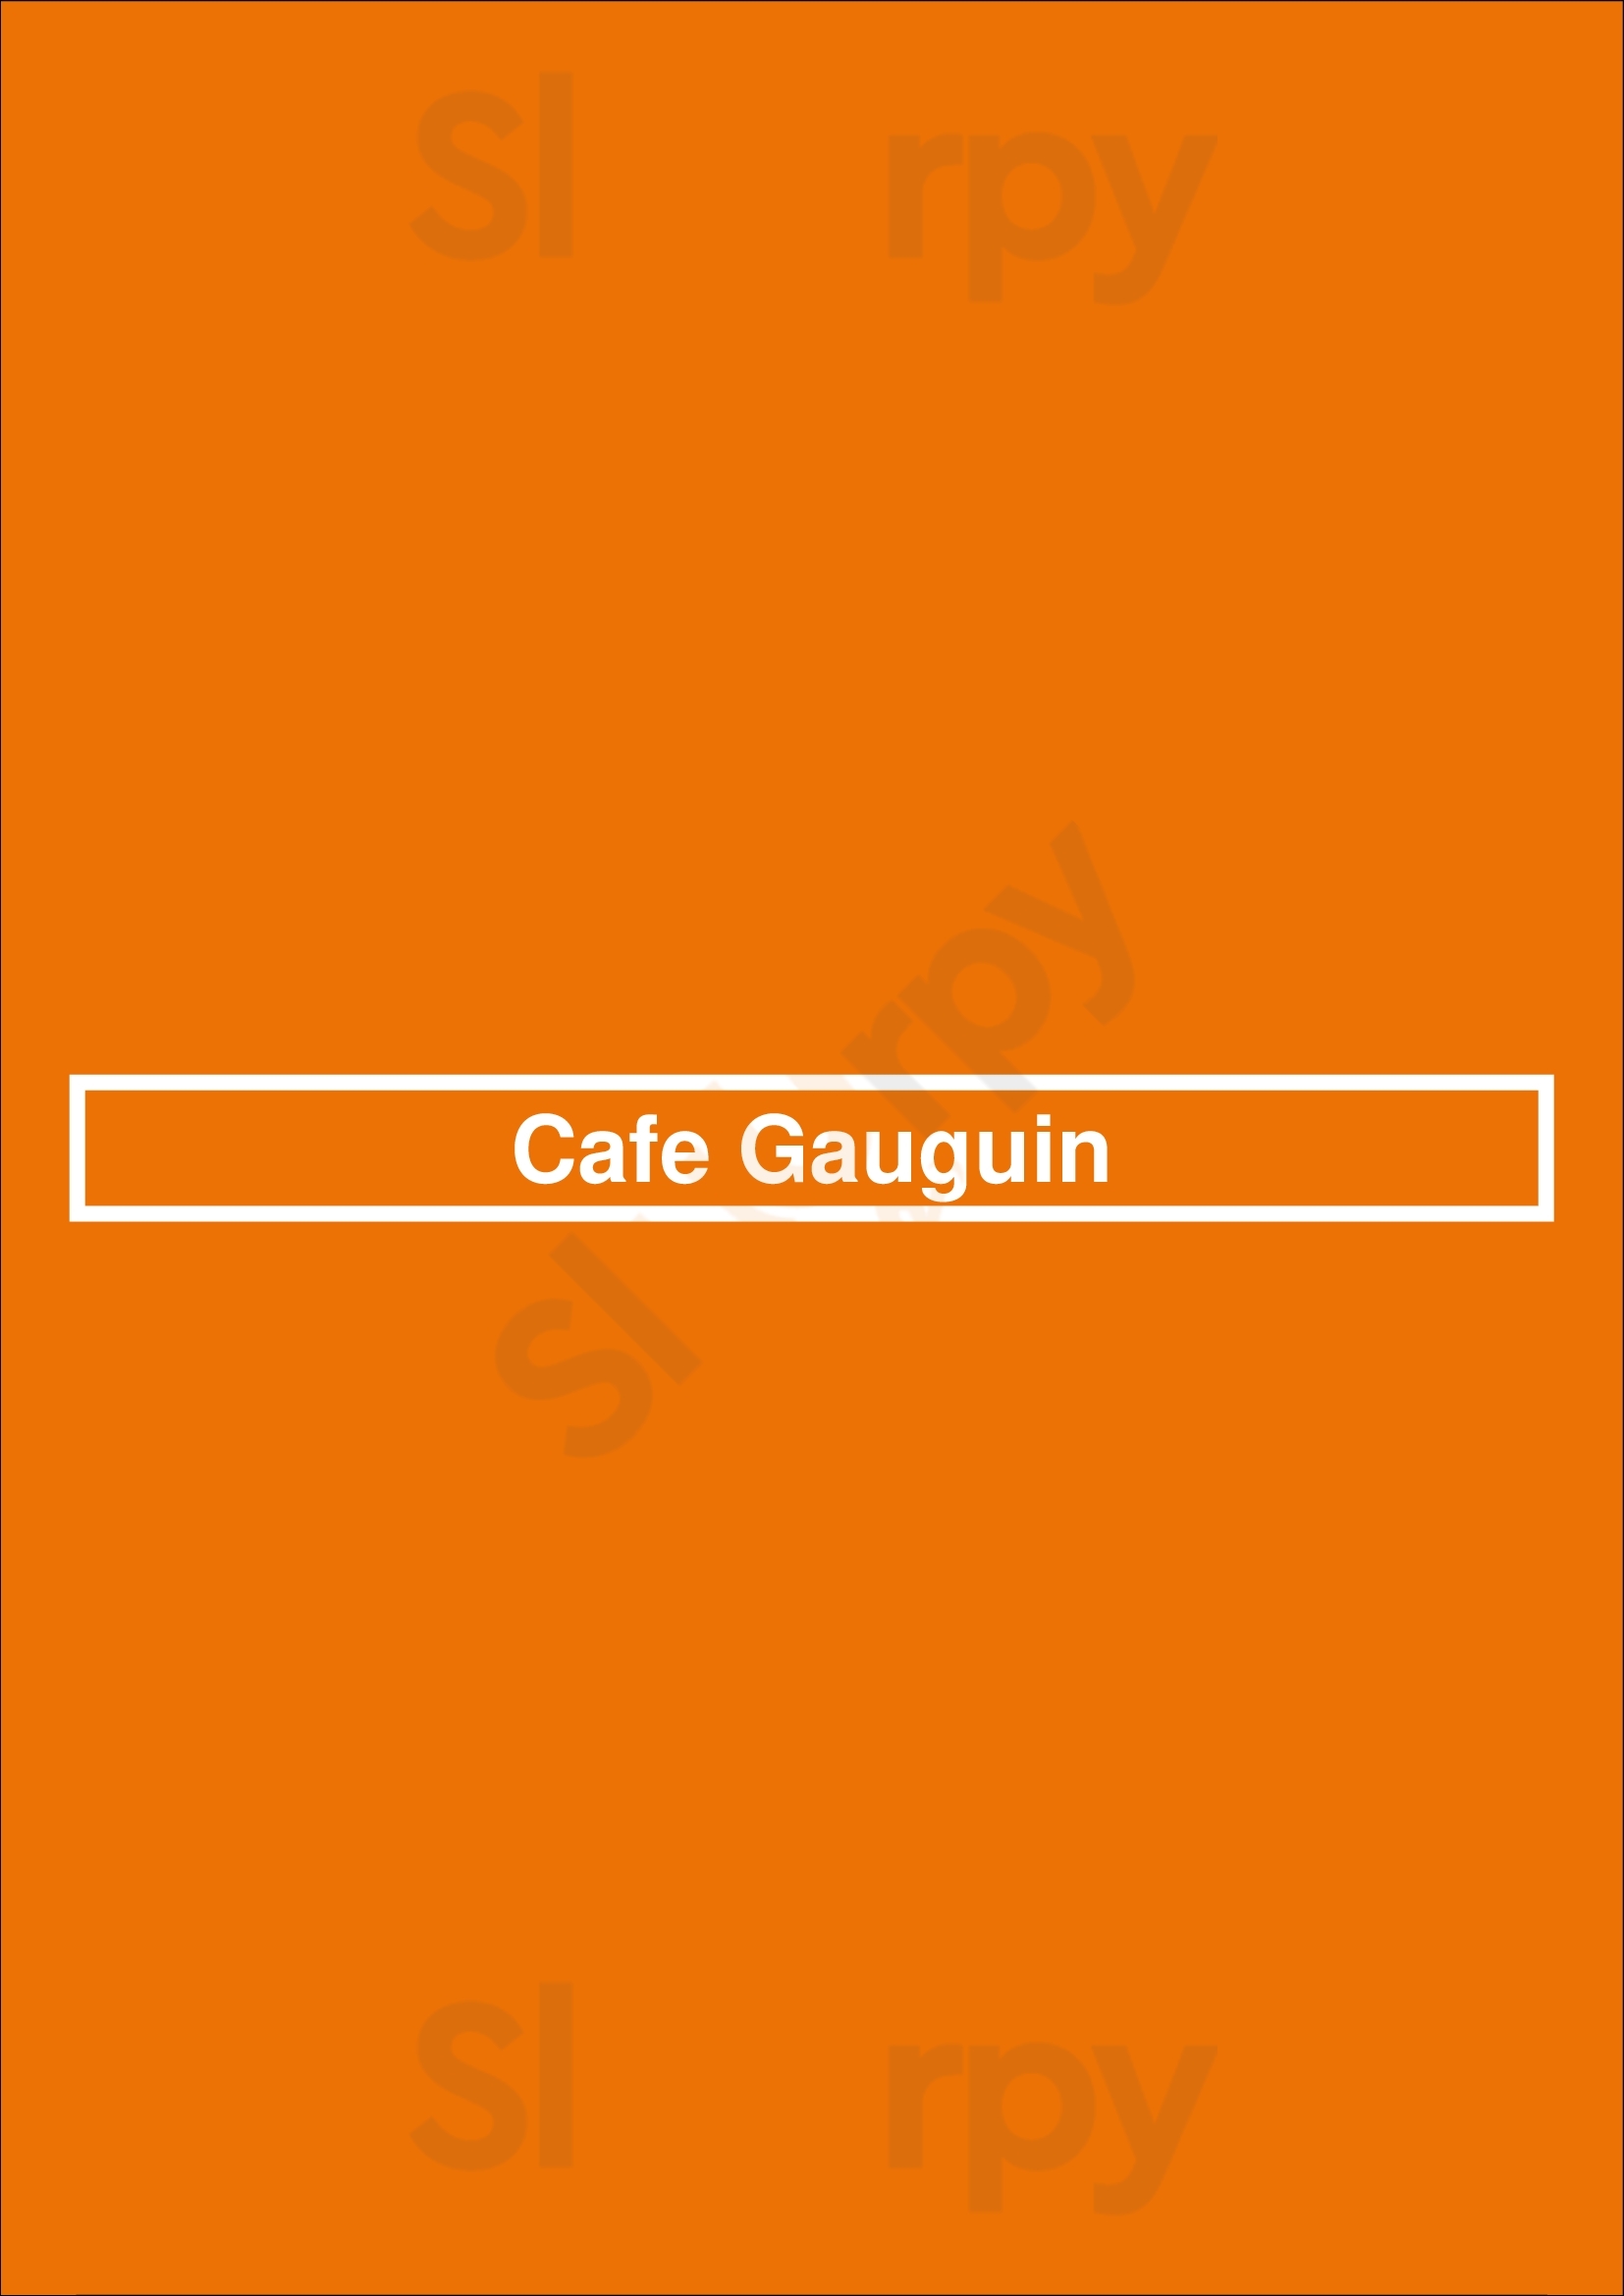 Cafe Gauguin Orlando Menu - 1